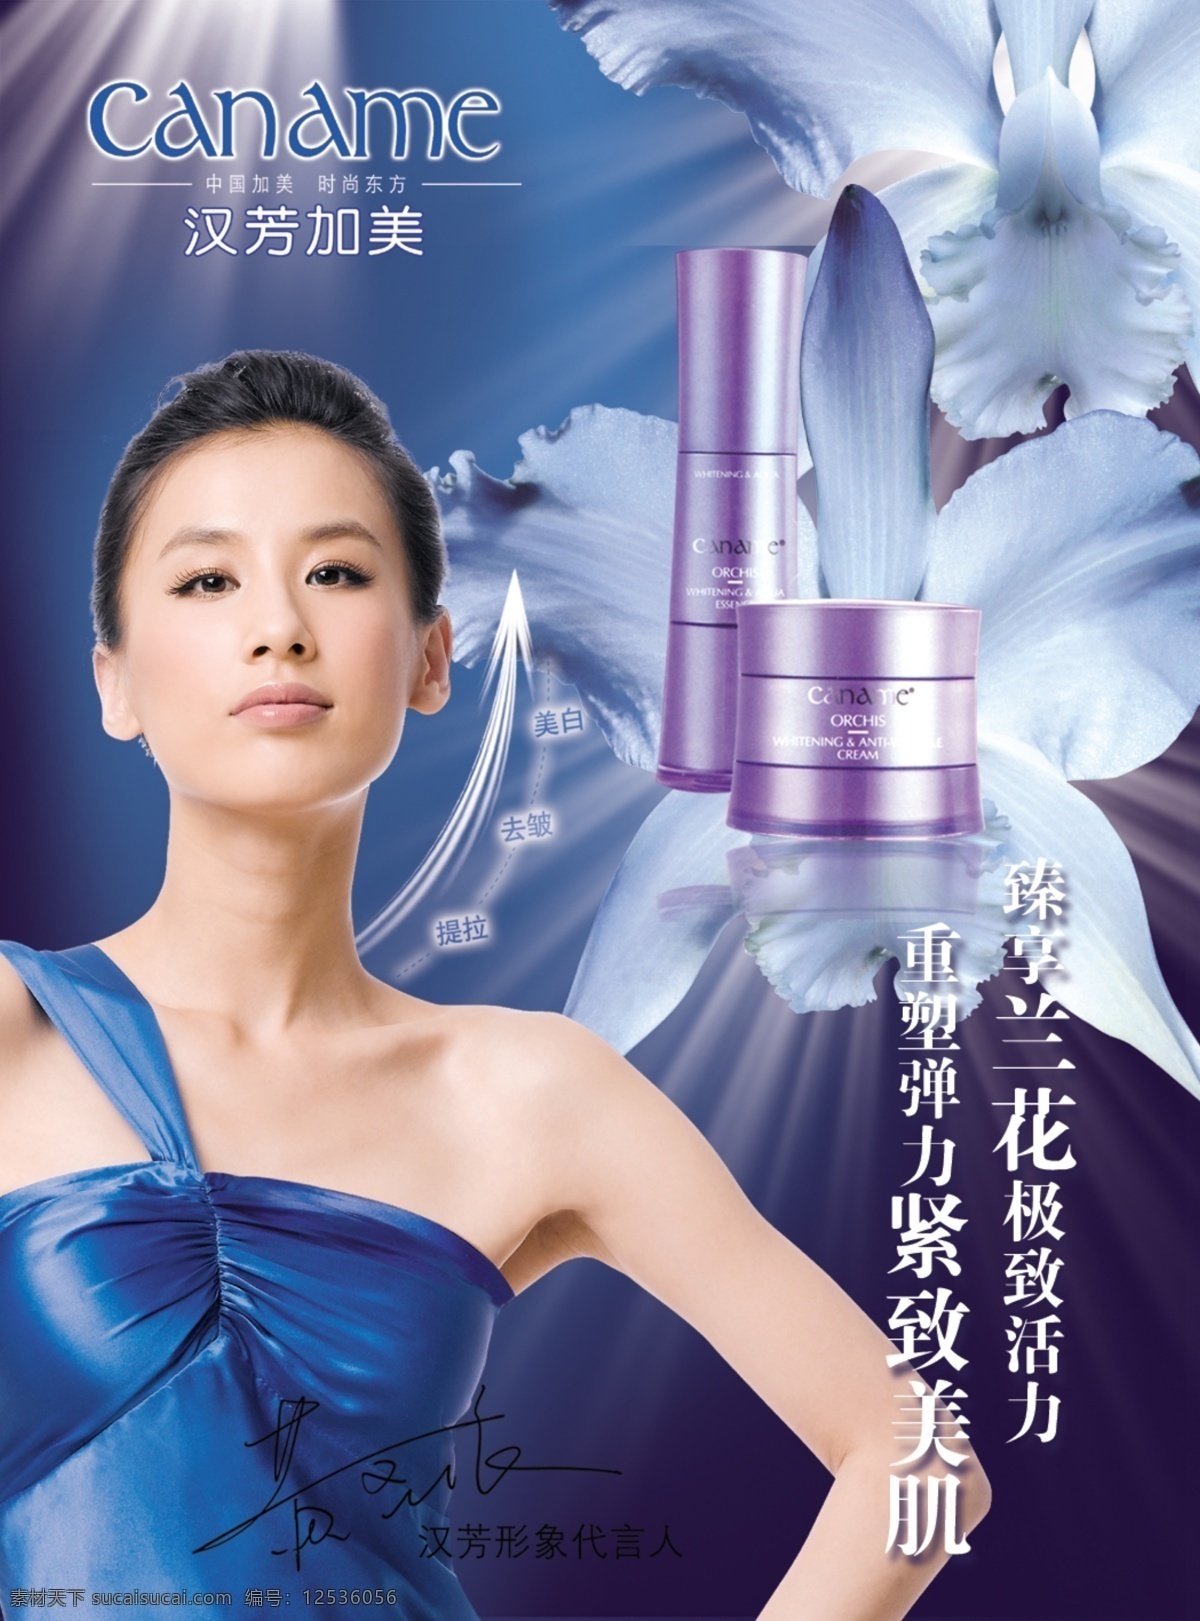 黄圣依 化妆品 广告 化妆品广告 化妆品海报 蓝色